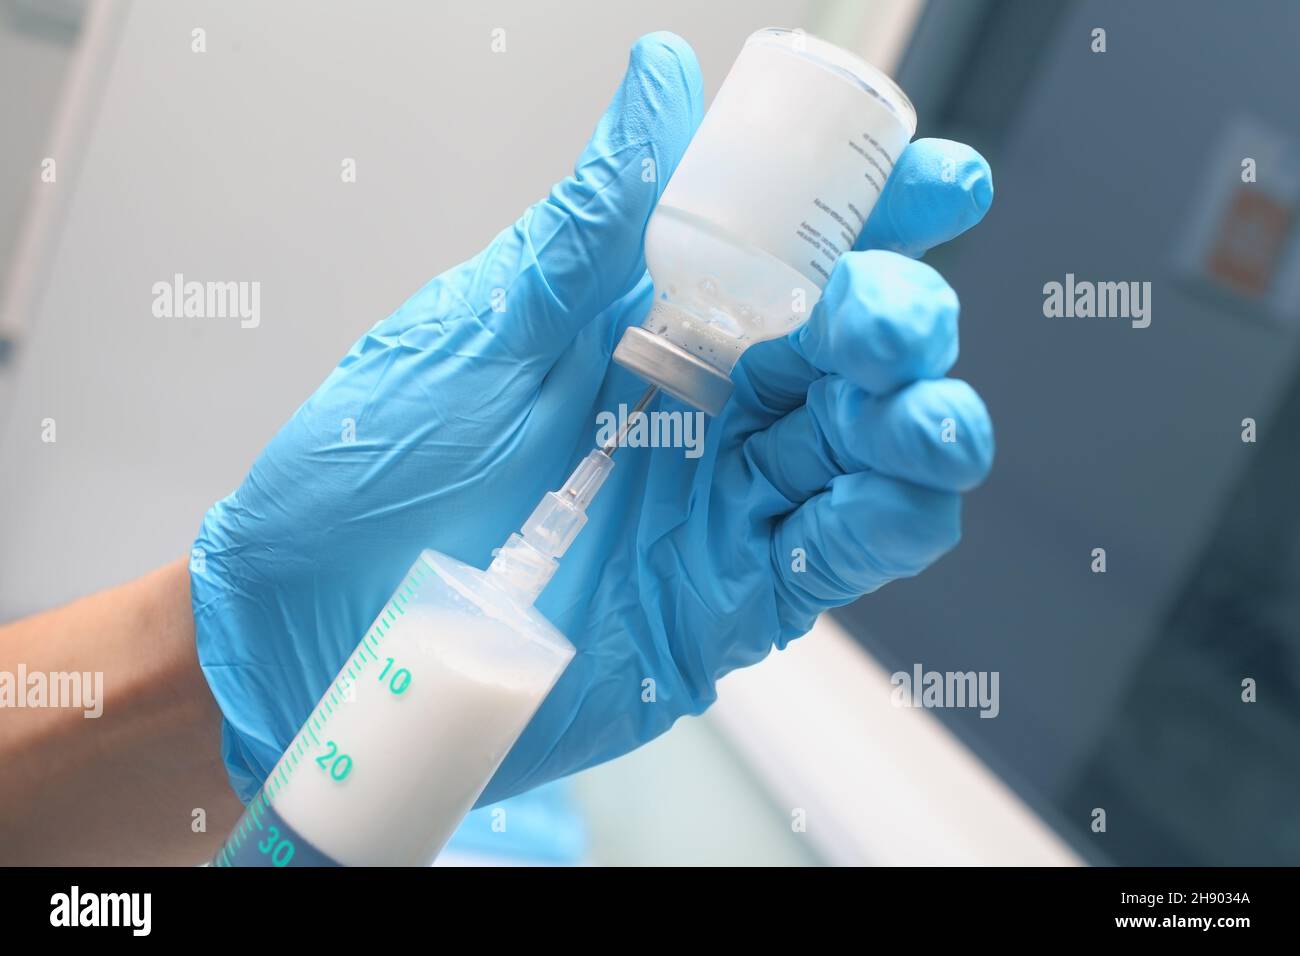 Médecin de sexe masculin dans les gants bleus remplissant la seringue de médicament blanc pour injection. Banque D'Images